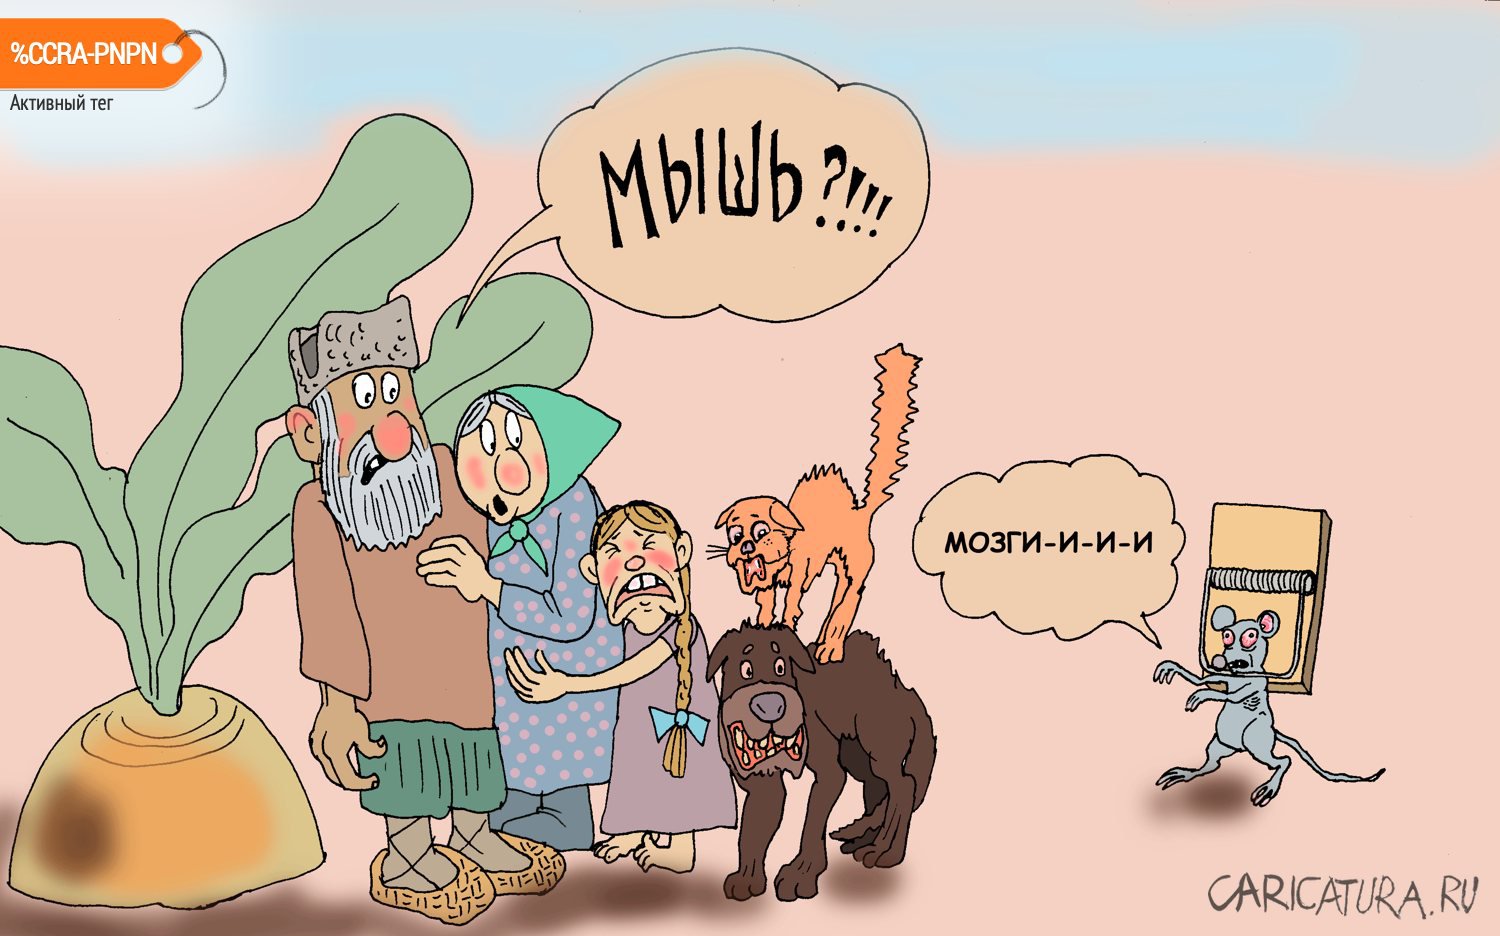 Карикатура "Зомби", Булат Ирсаев